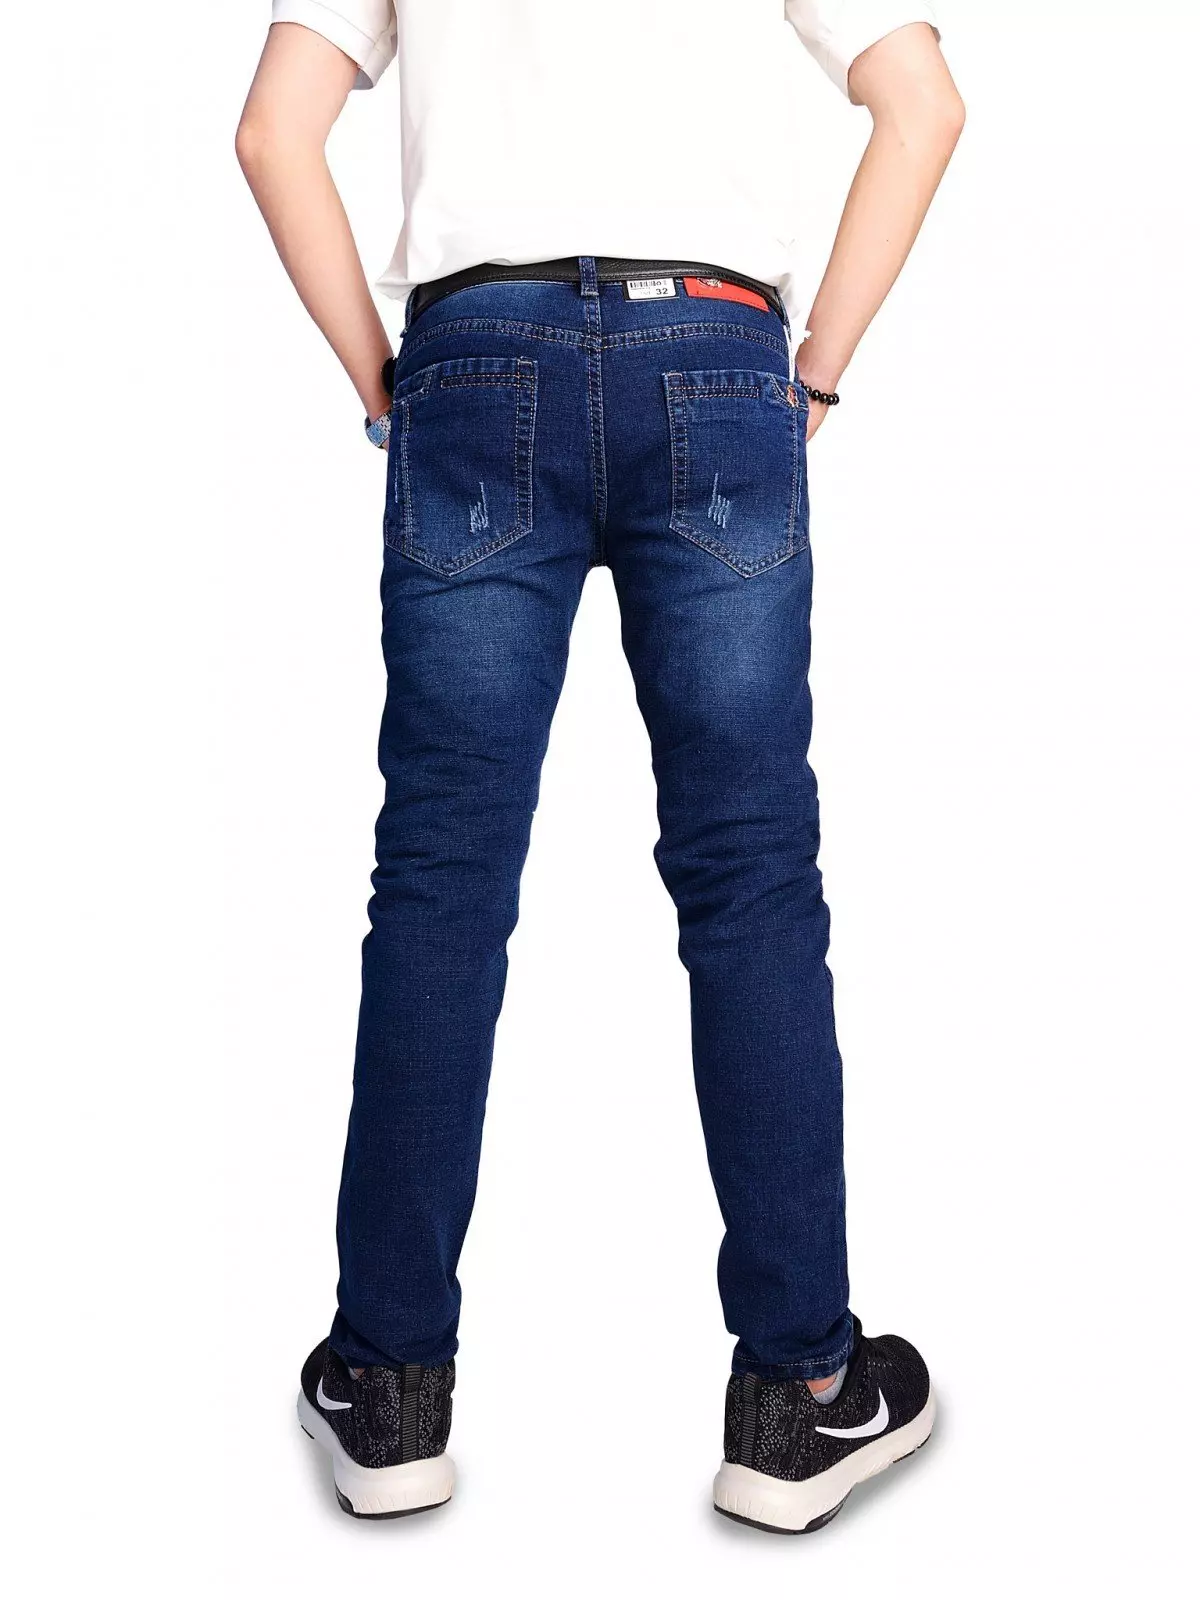 Cách làm quần jeans rách